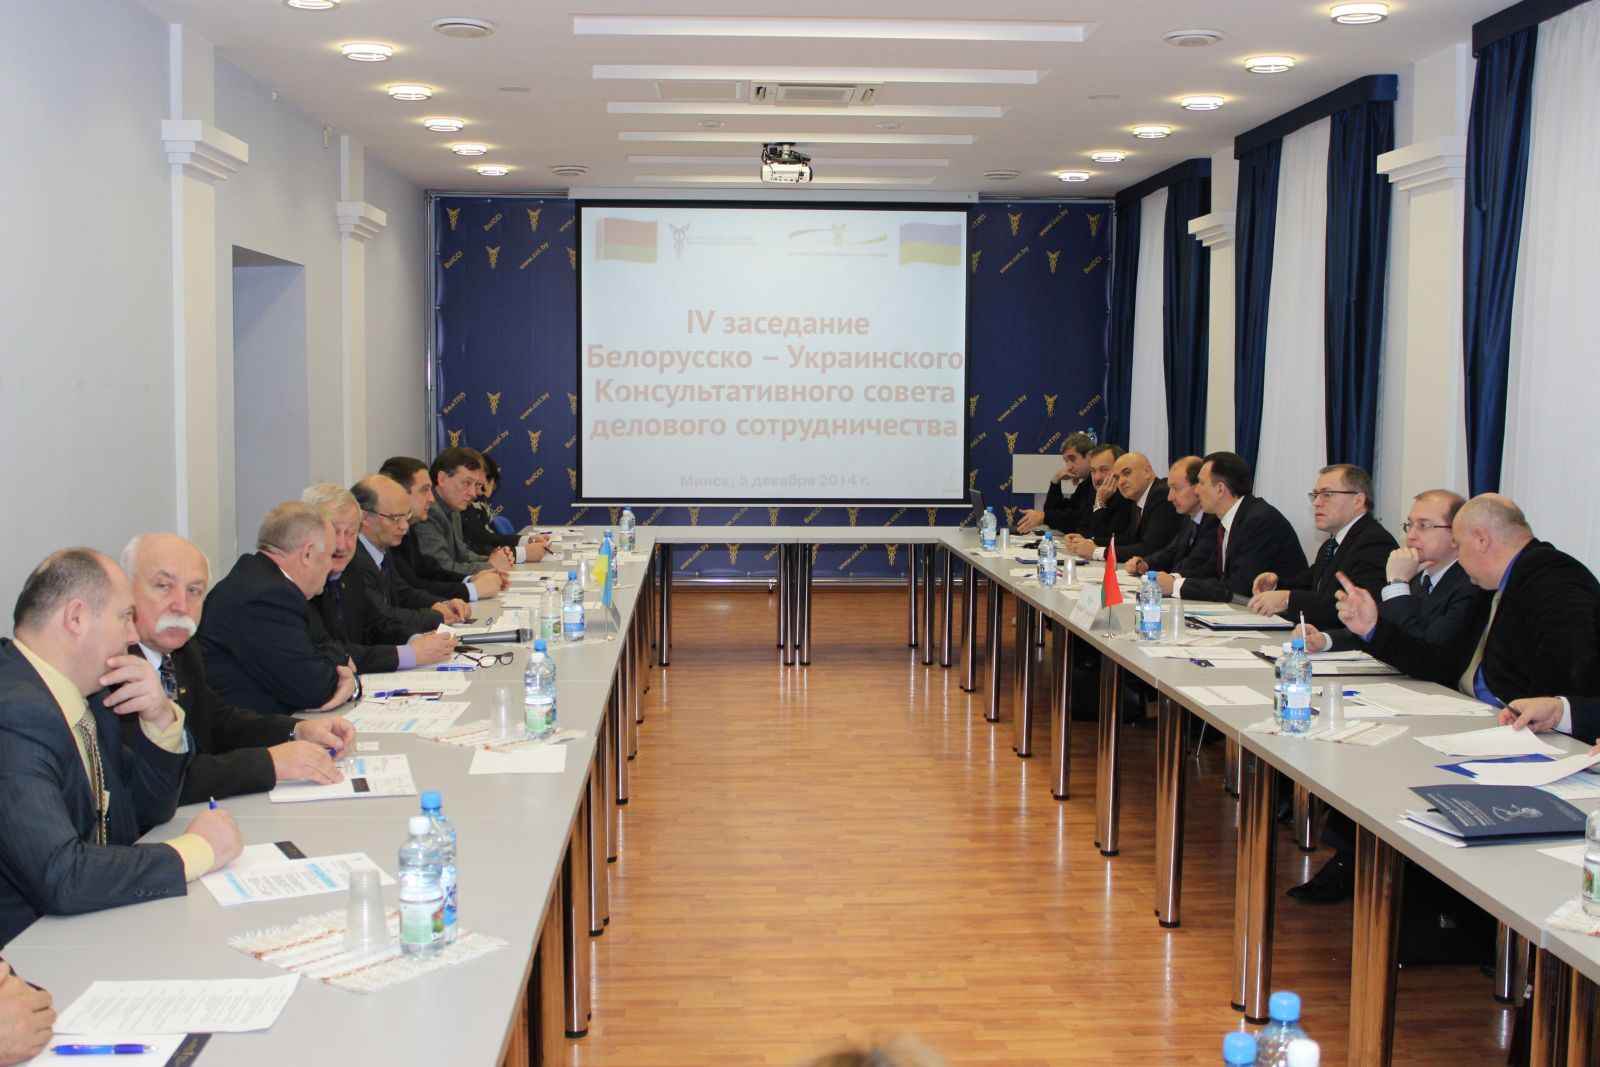 IV заседание Белорусско-Украинского Консультативного совета делового сотрудничества